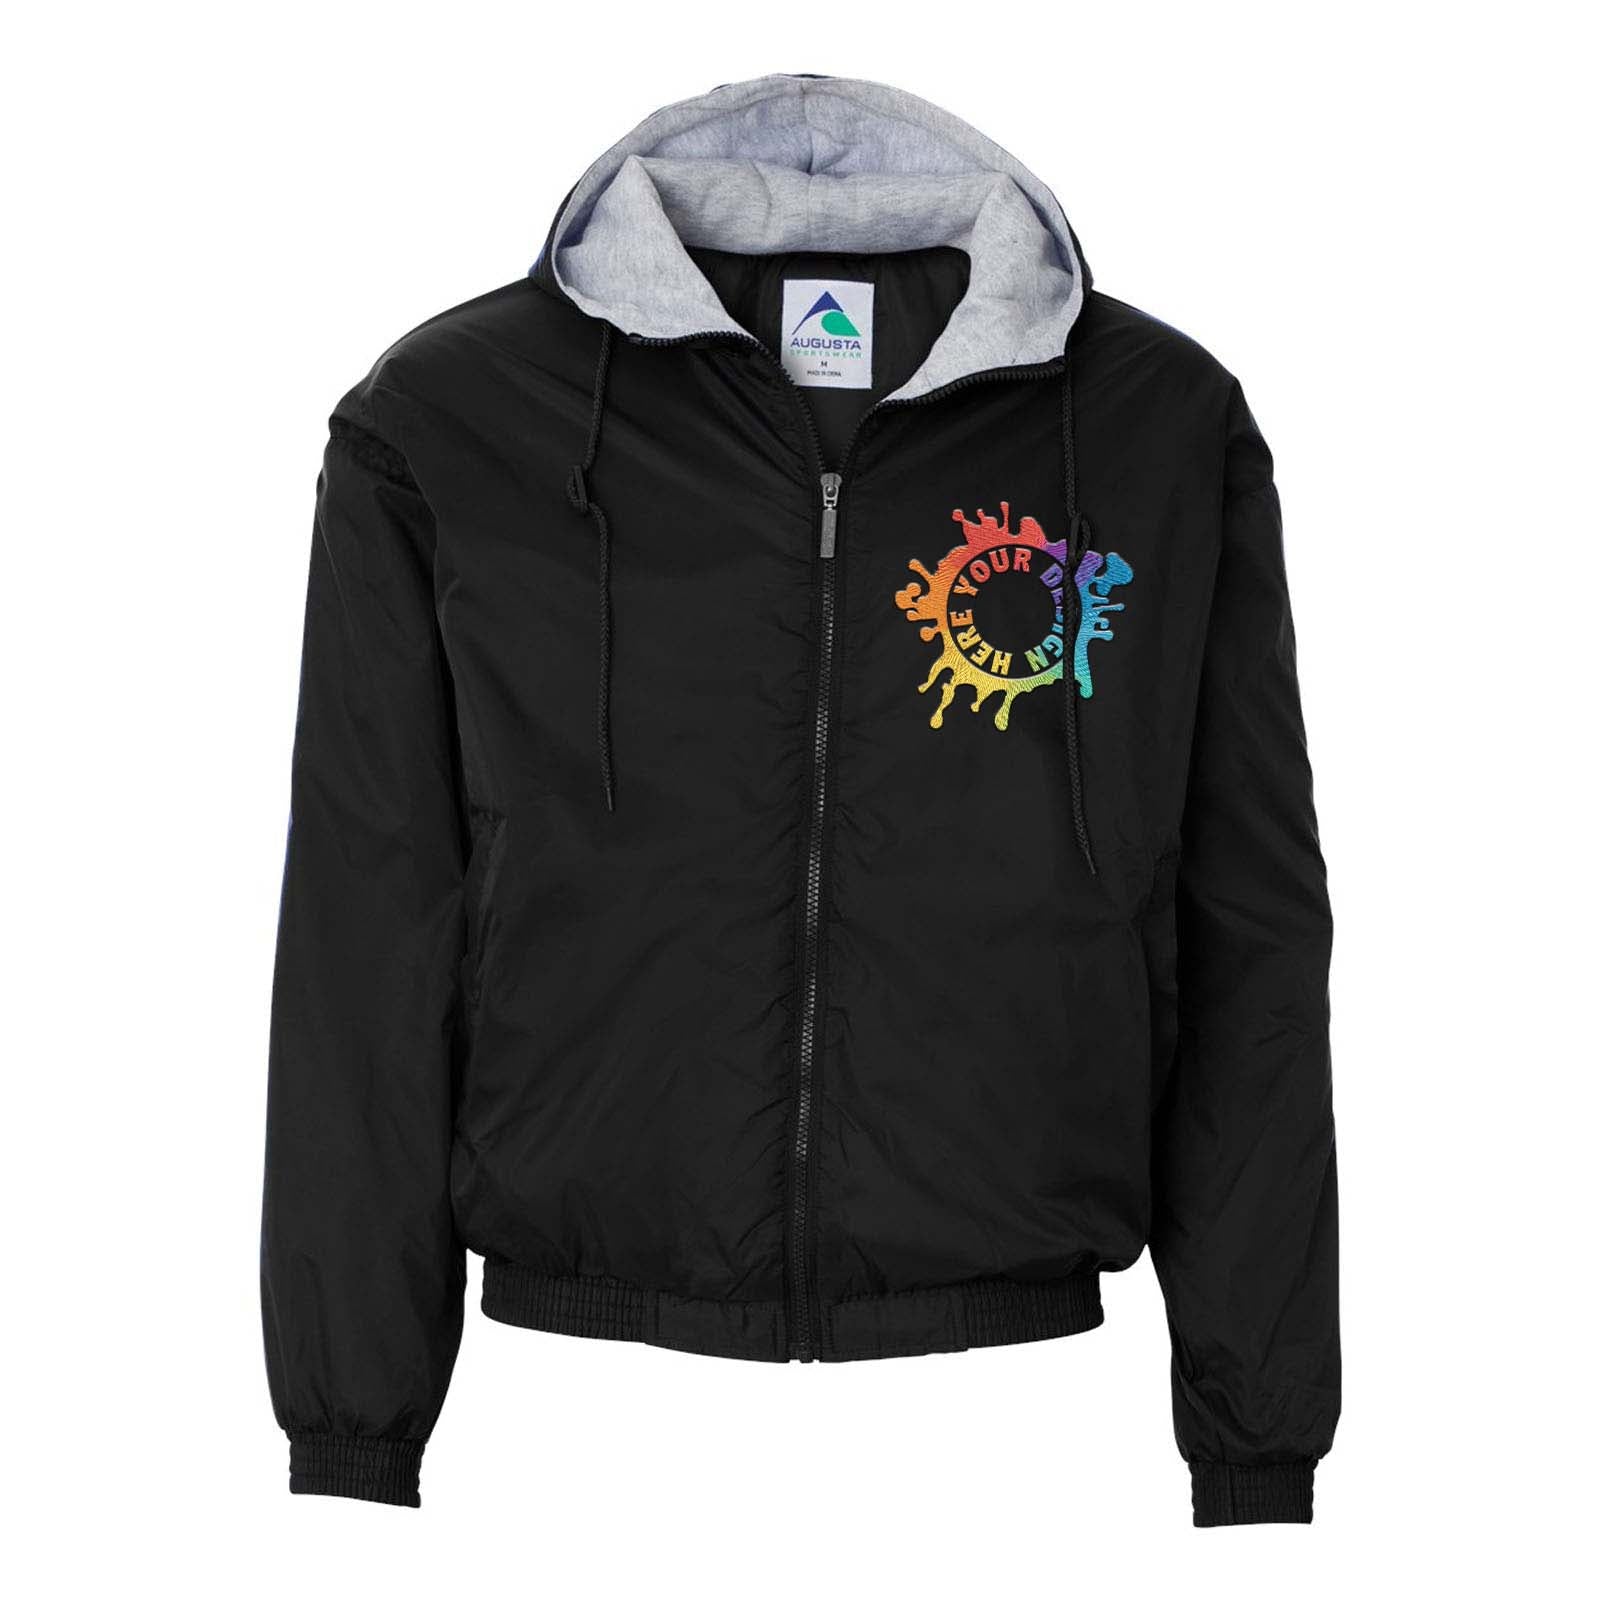 Augusta Sportswear Fleece Lined Hooded Jacket Embroidery - Mato & Hash